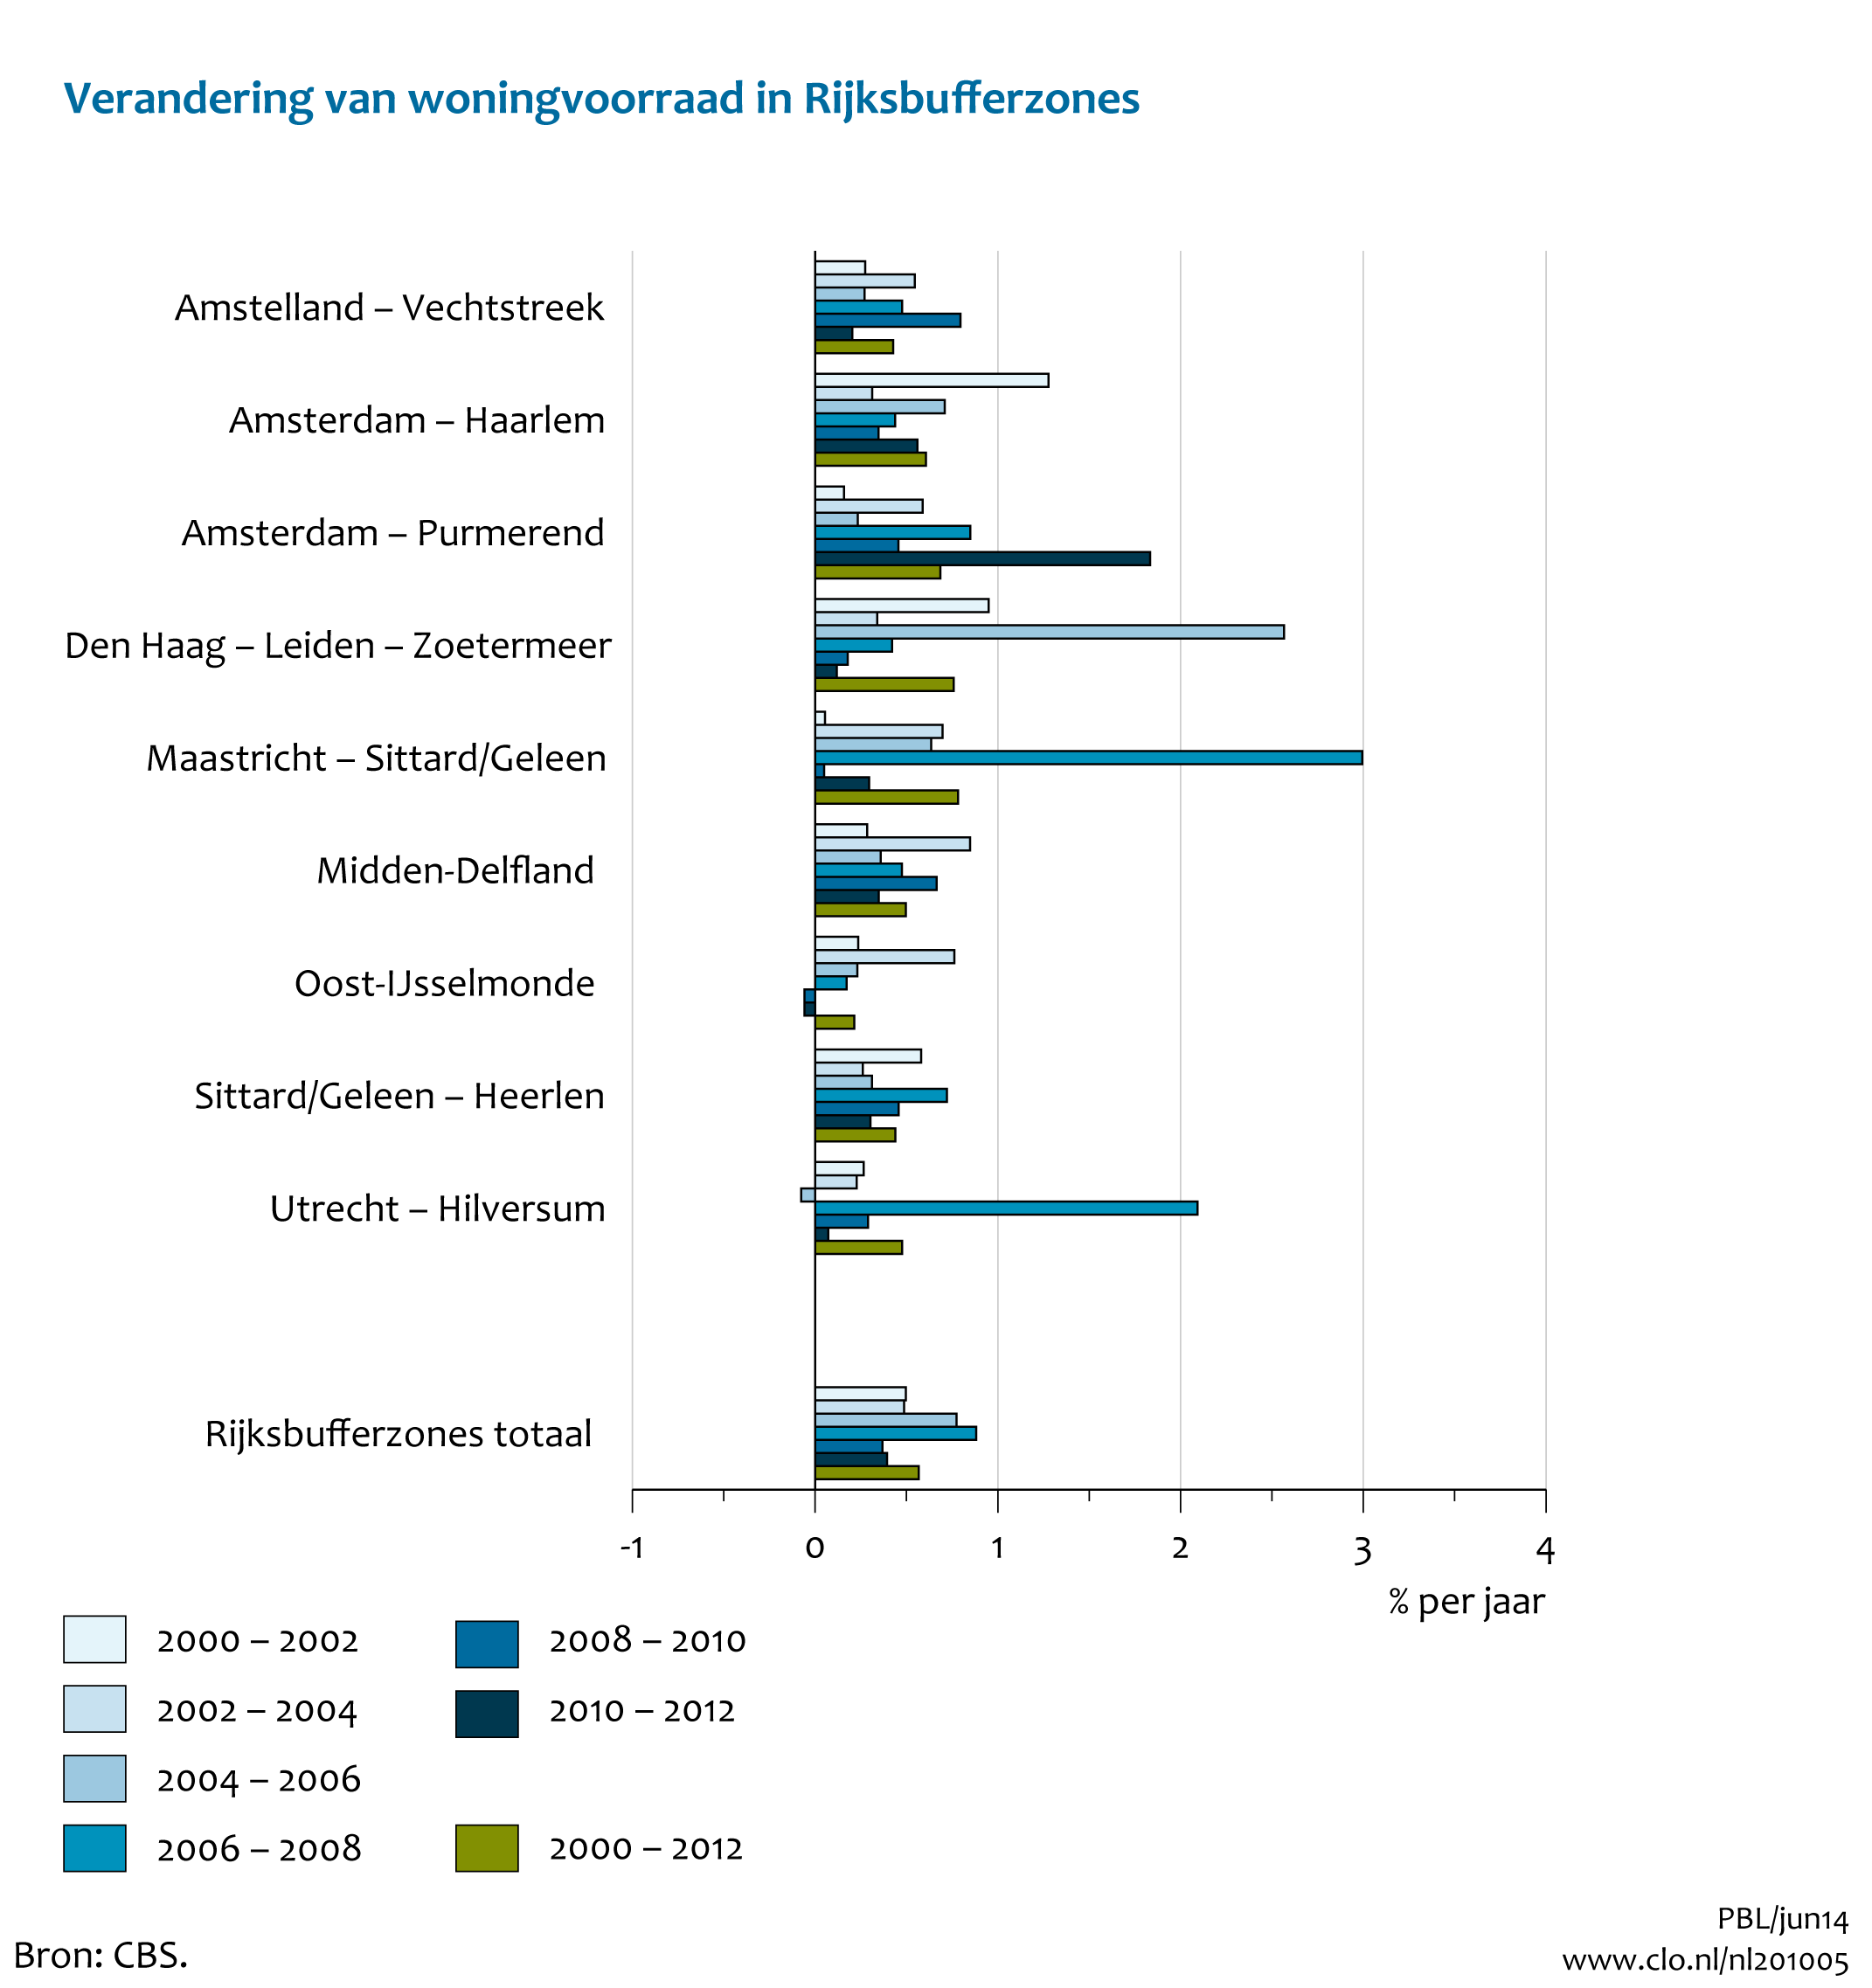 Figuur Jaarlijkse verandering woningvoorraad in Rijksbufferzones, 2000-2012. In de rest van de tekst wordt deze figuur uitgebreider uitgelegd.